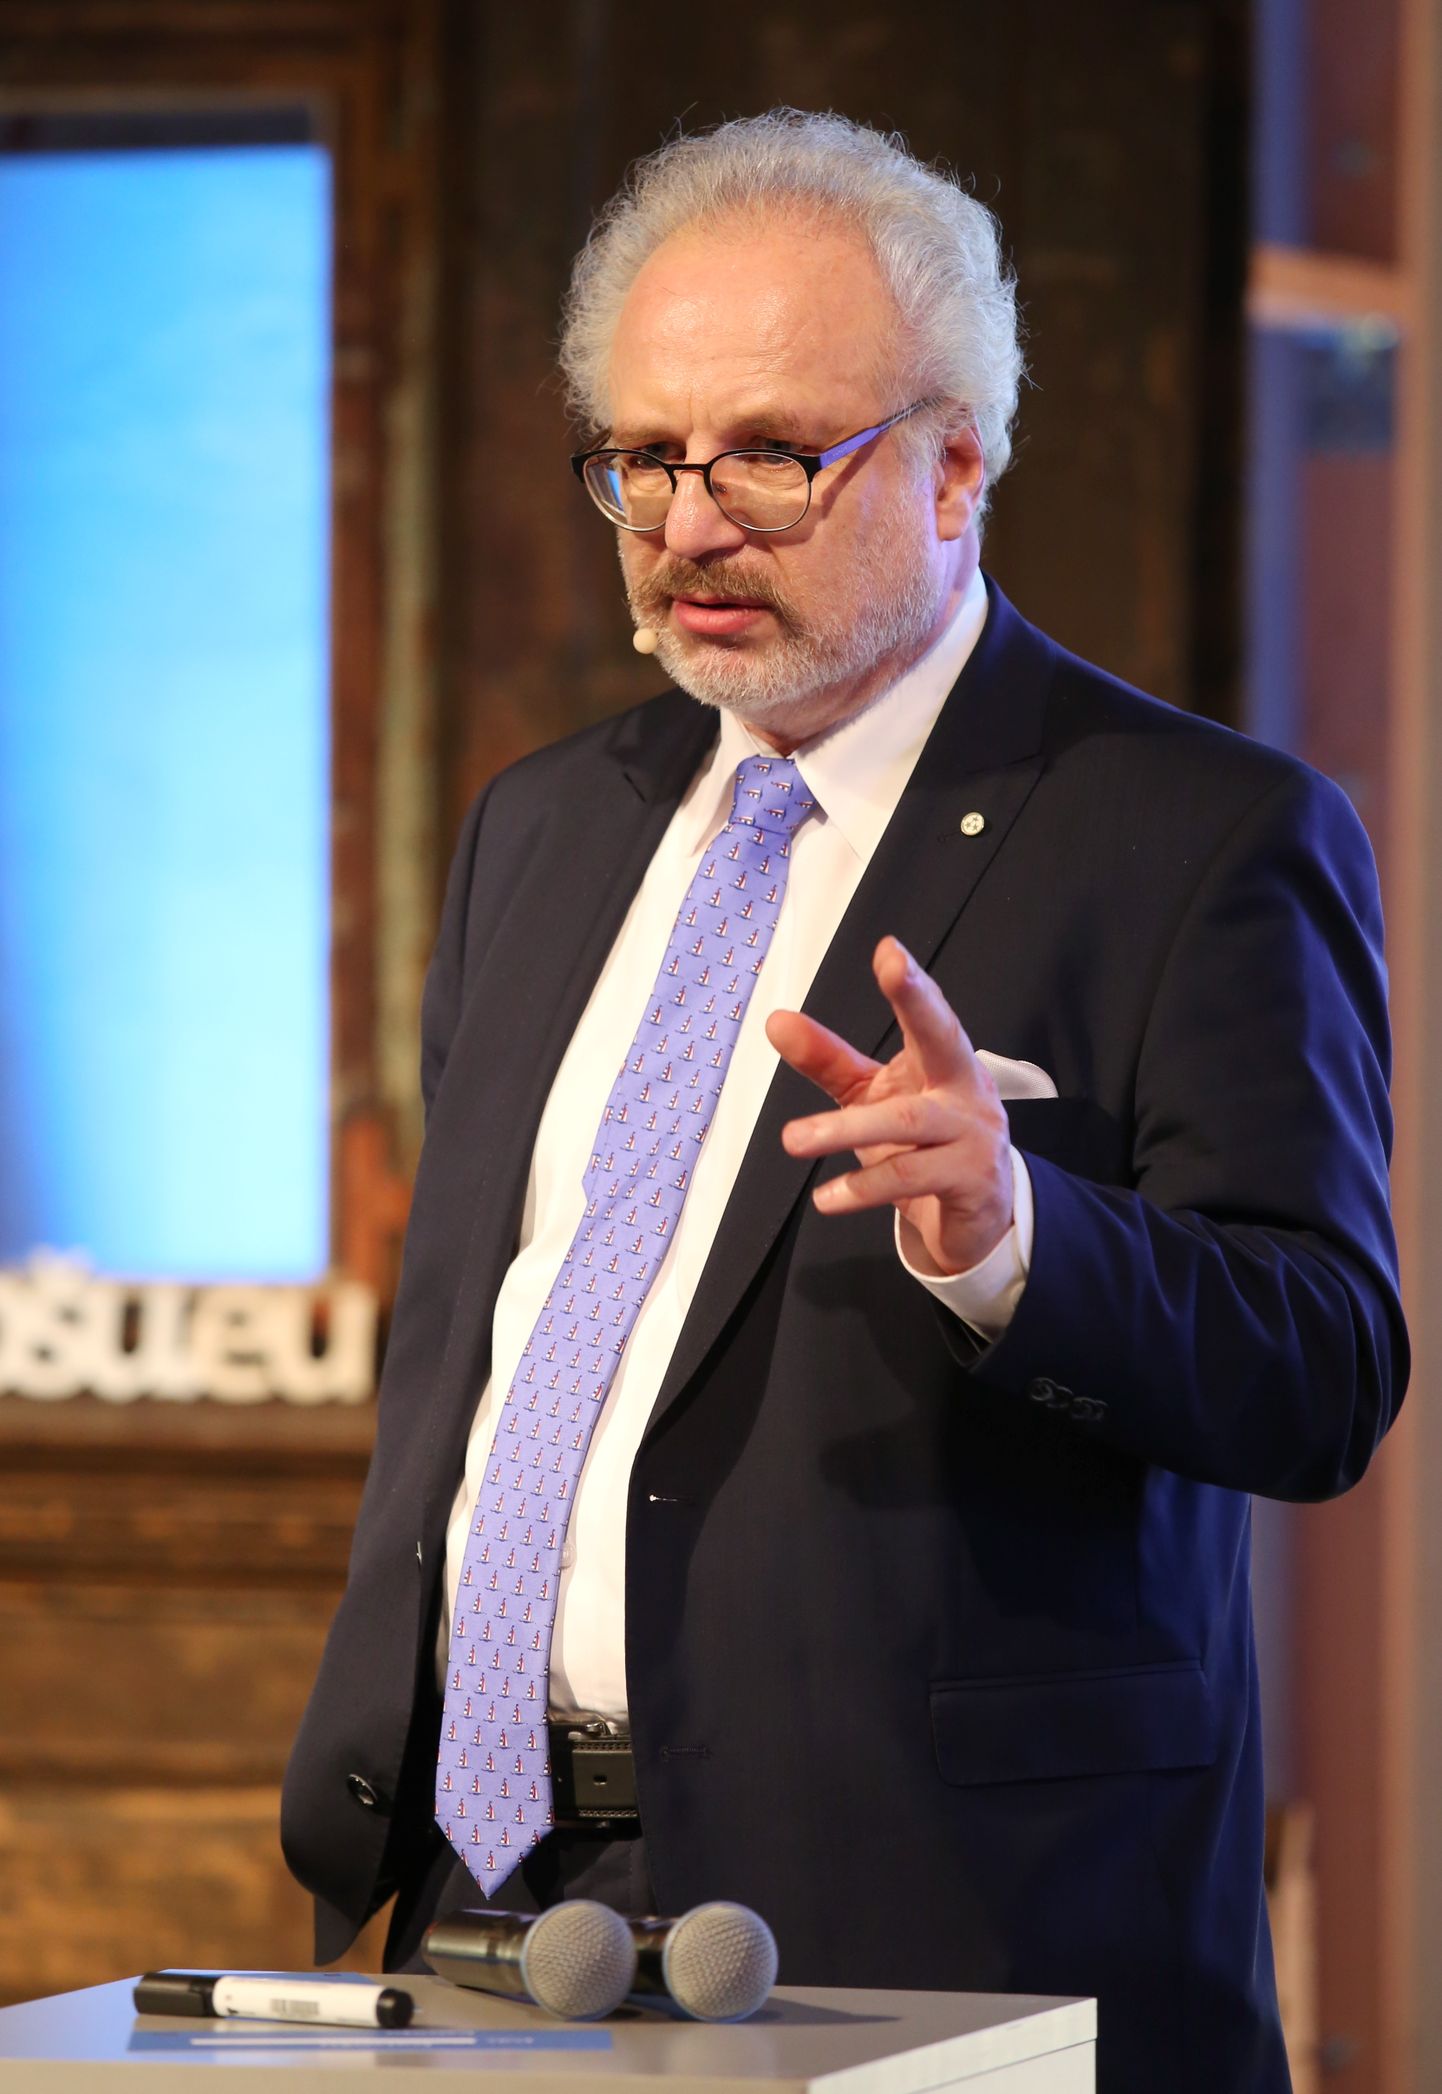 Lätlasest Euroopa Liidu kohtu kohtunik Egils Levits, kelle Läti presidendikandidaadiks esitamises võimuliit esmaspäeval kokku leppis.